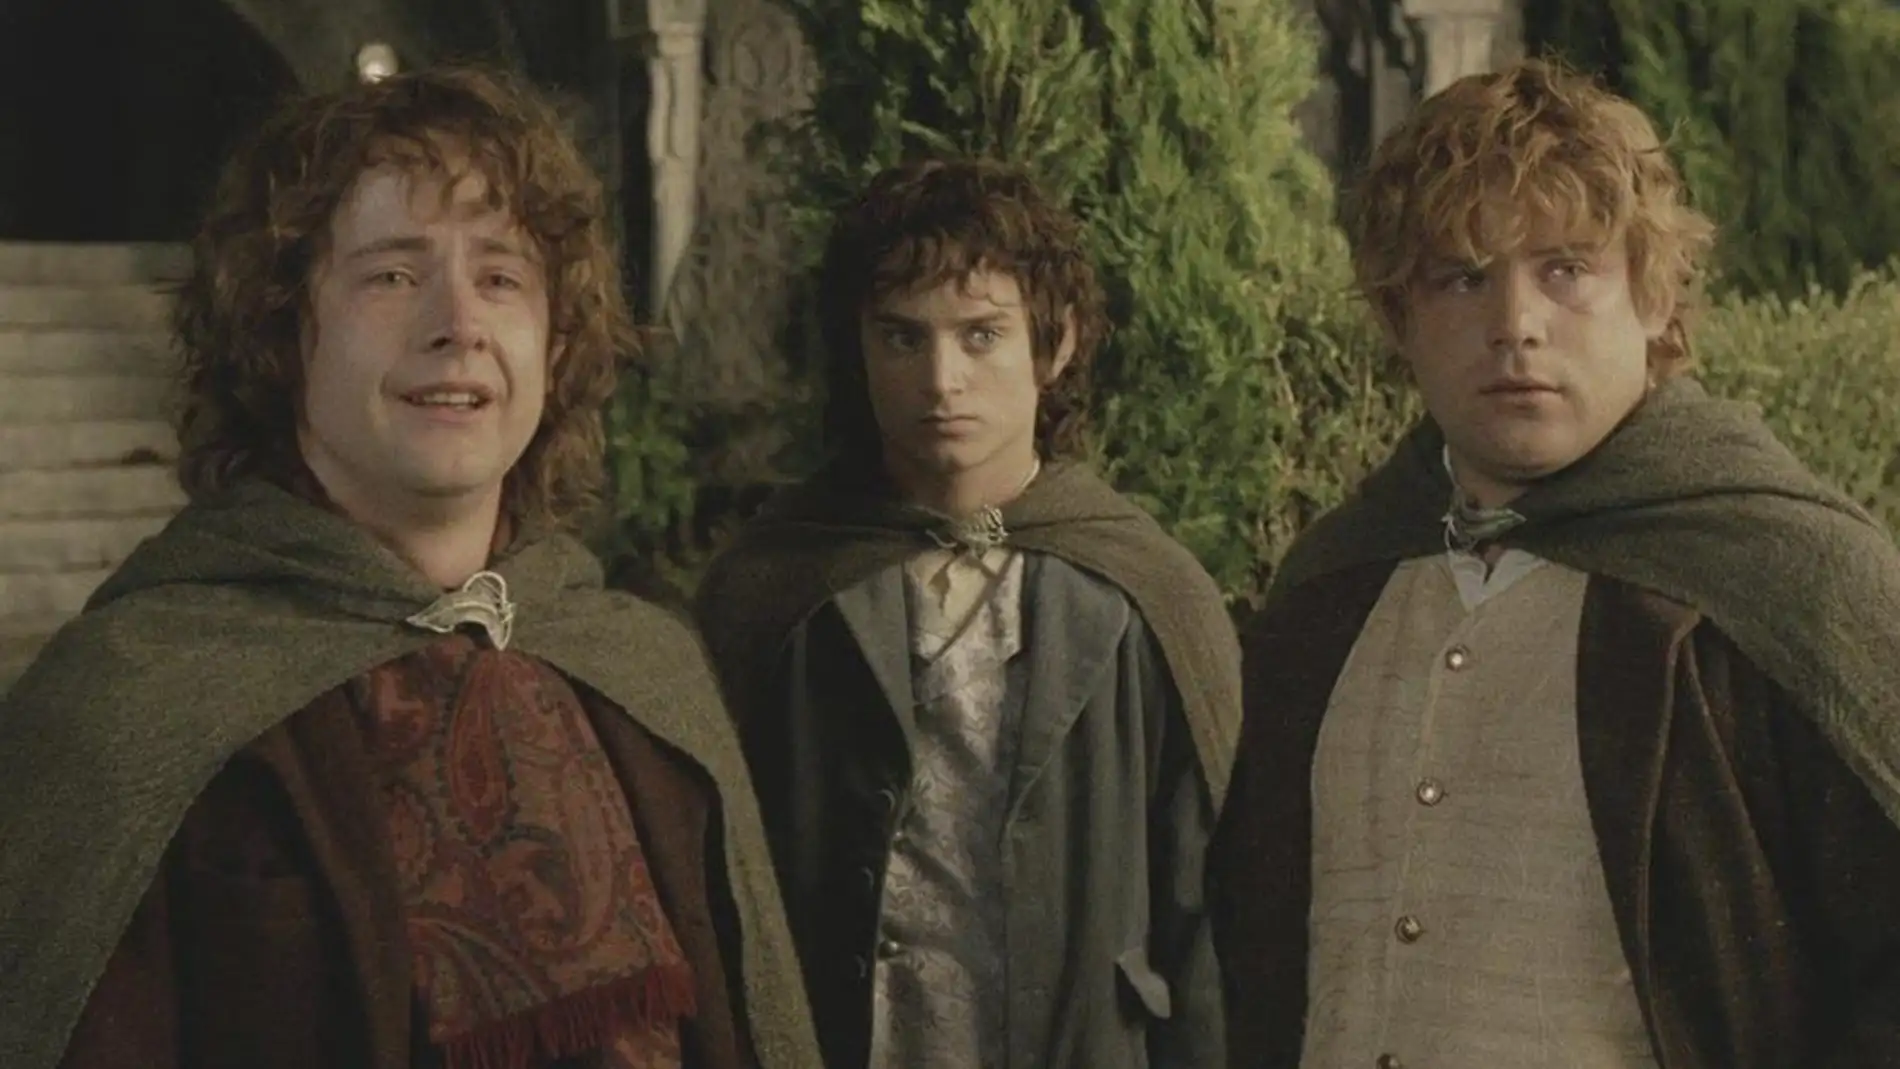 Los hobbits favoritos de Tolkien: Pippin, Frodo, Sam, ir al cine y leer